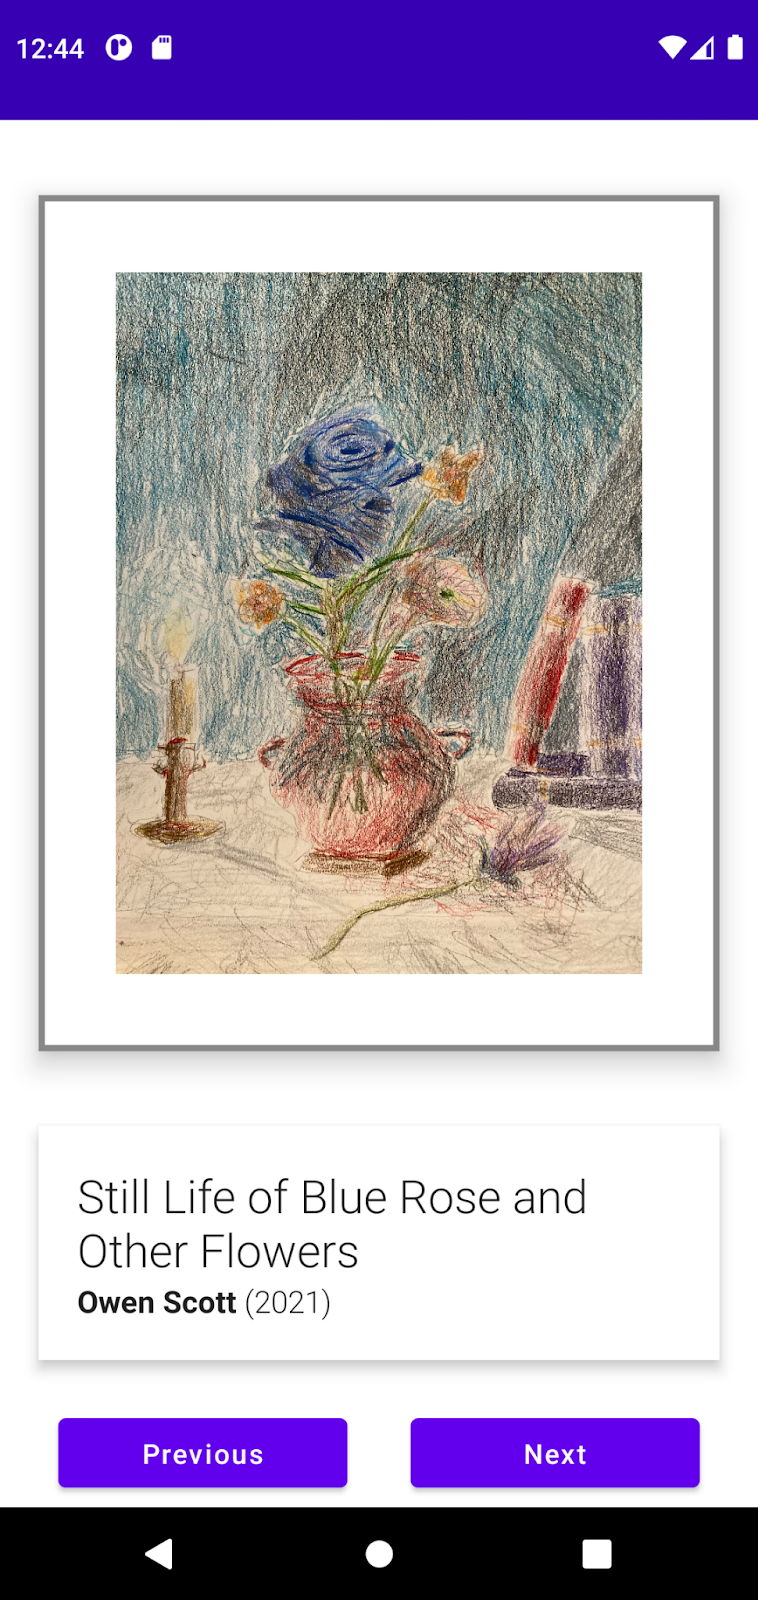 一個 Art Space 應用程式範例是，顯示 Owen Scott 創作的「Still Life of Blue Rose」和「Other Flowers」。